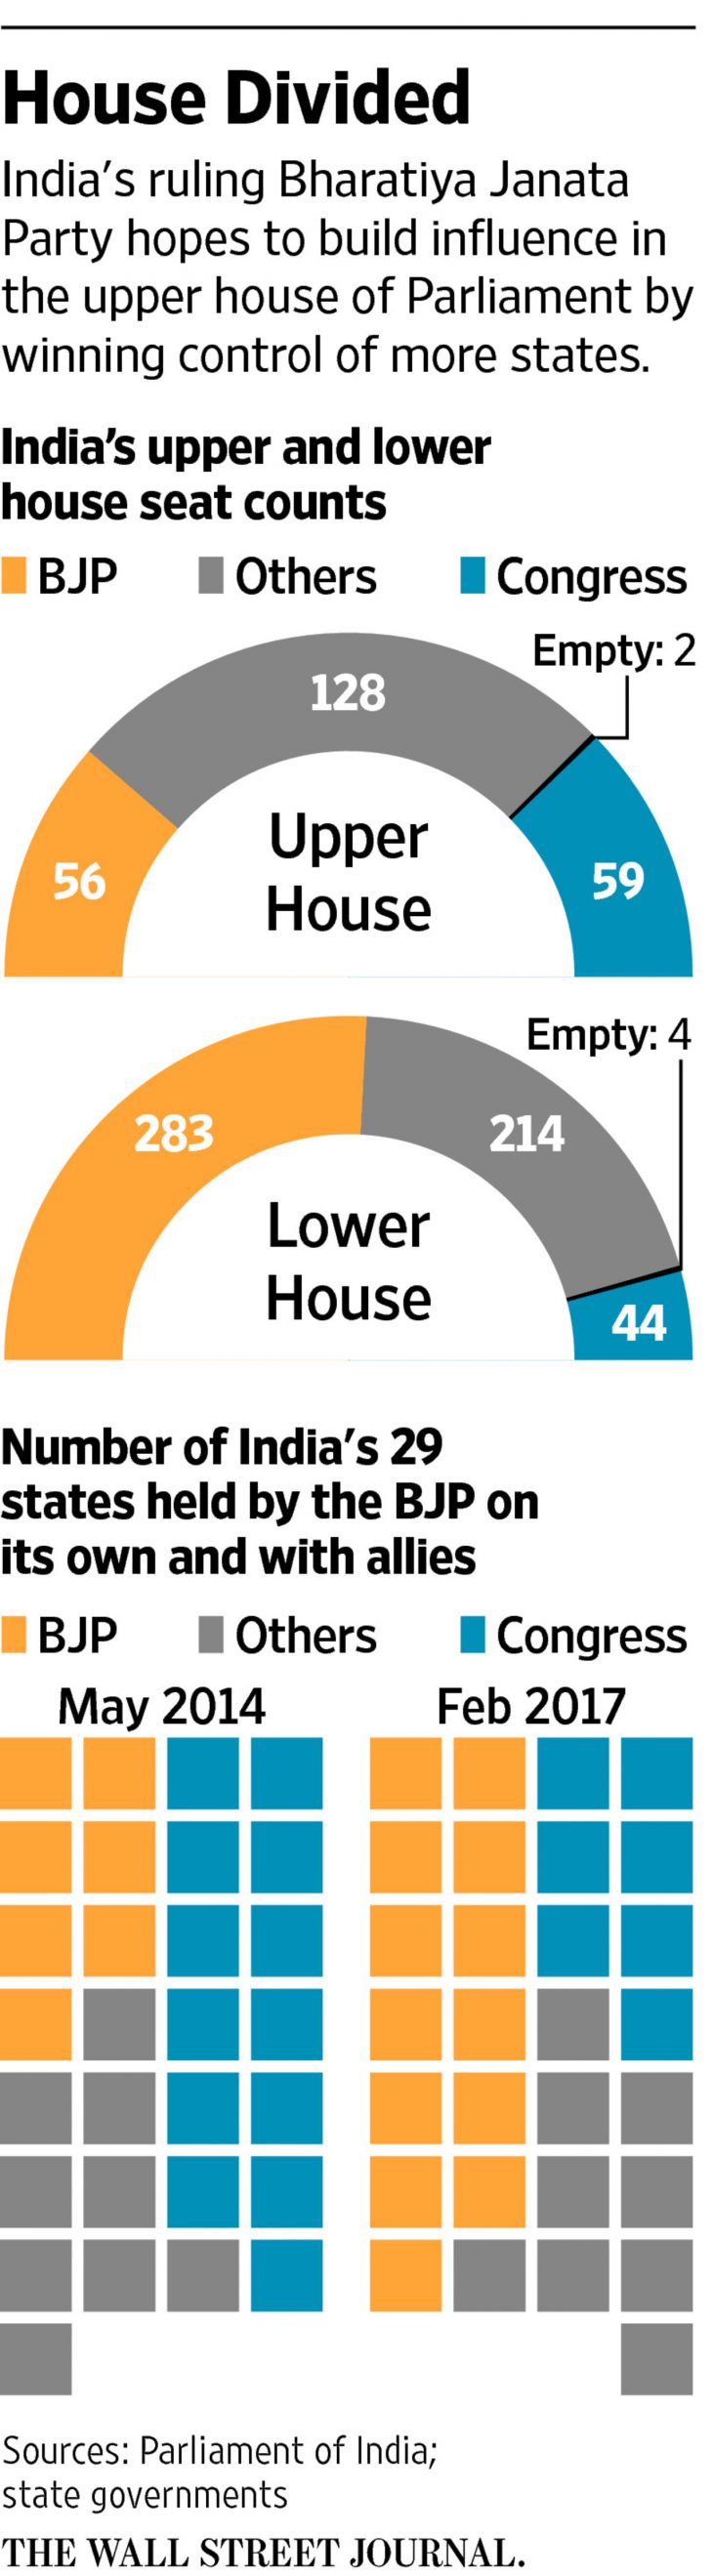 India Vote in Uttar Pradesh State to Reverberate Nationally for Modi